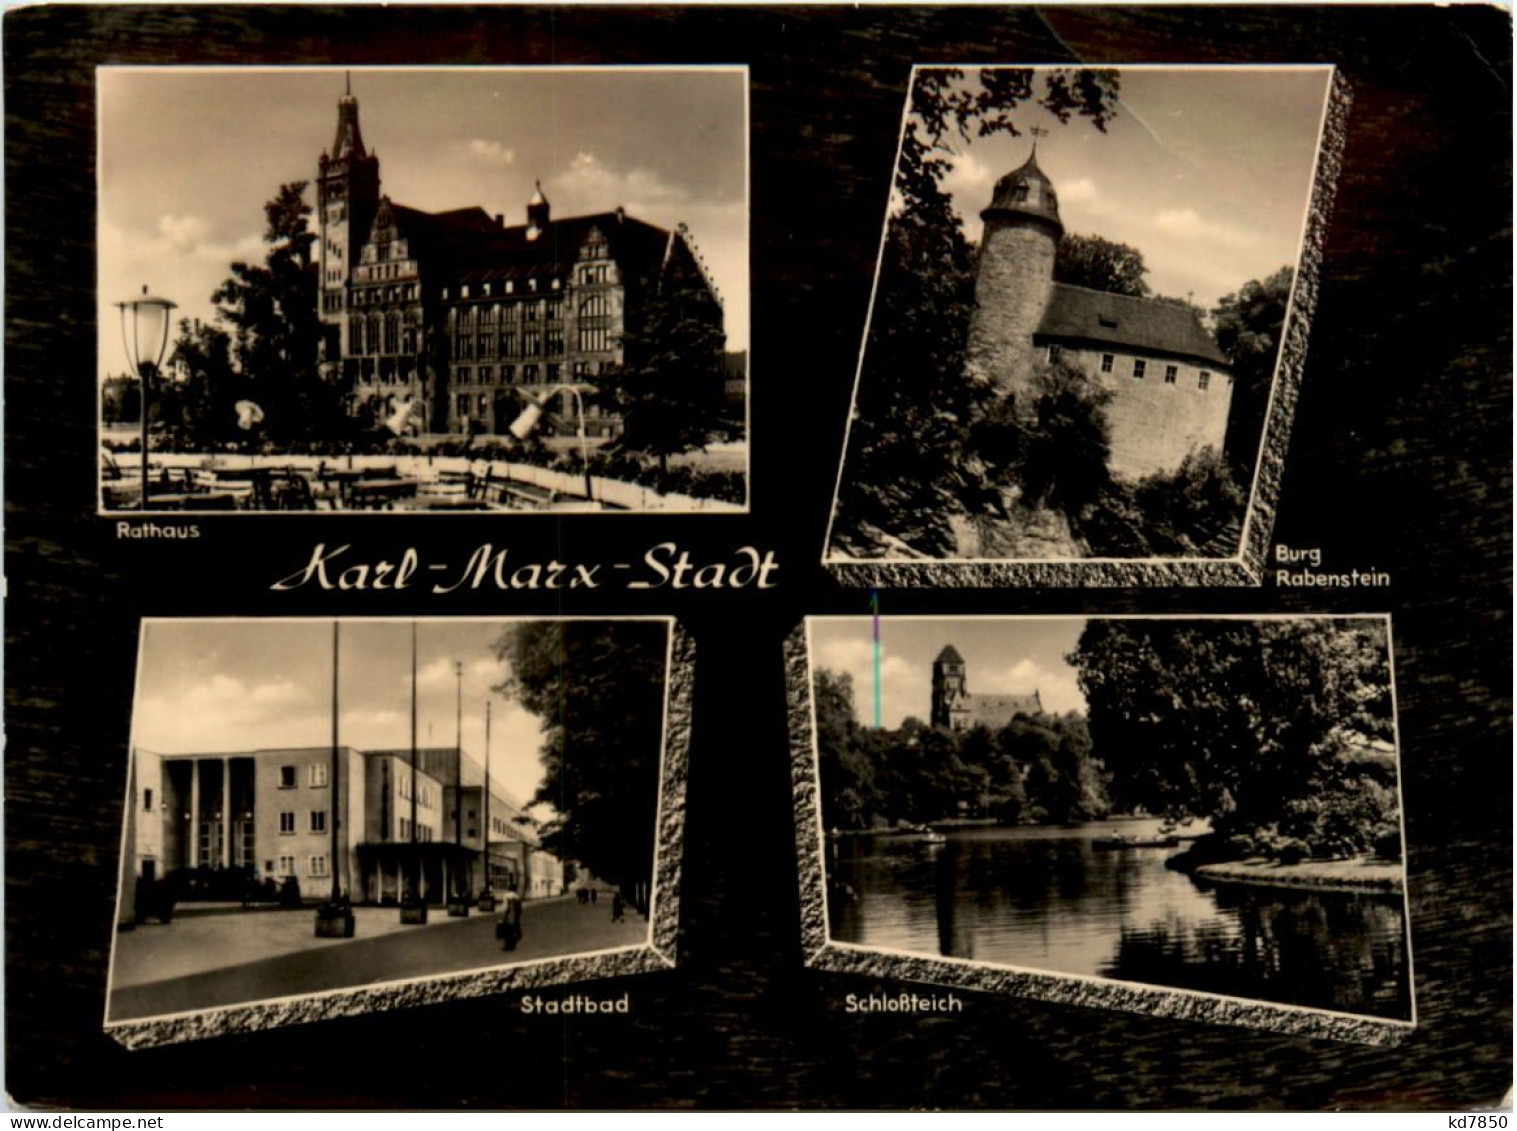 Karl-Marx-Stadt, Div. Bilder - Chemnitz (Karl-Marx-Stadt 1953-1990)